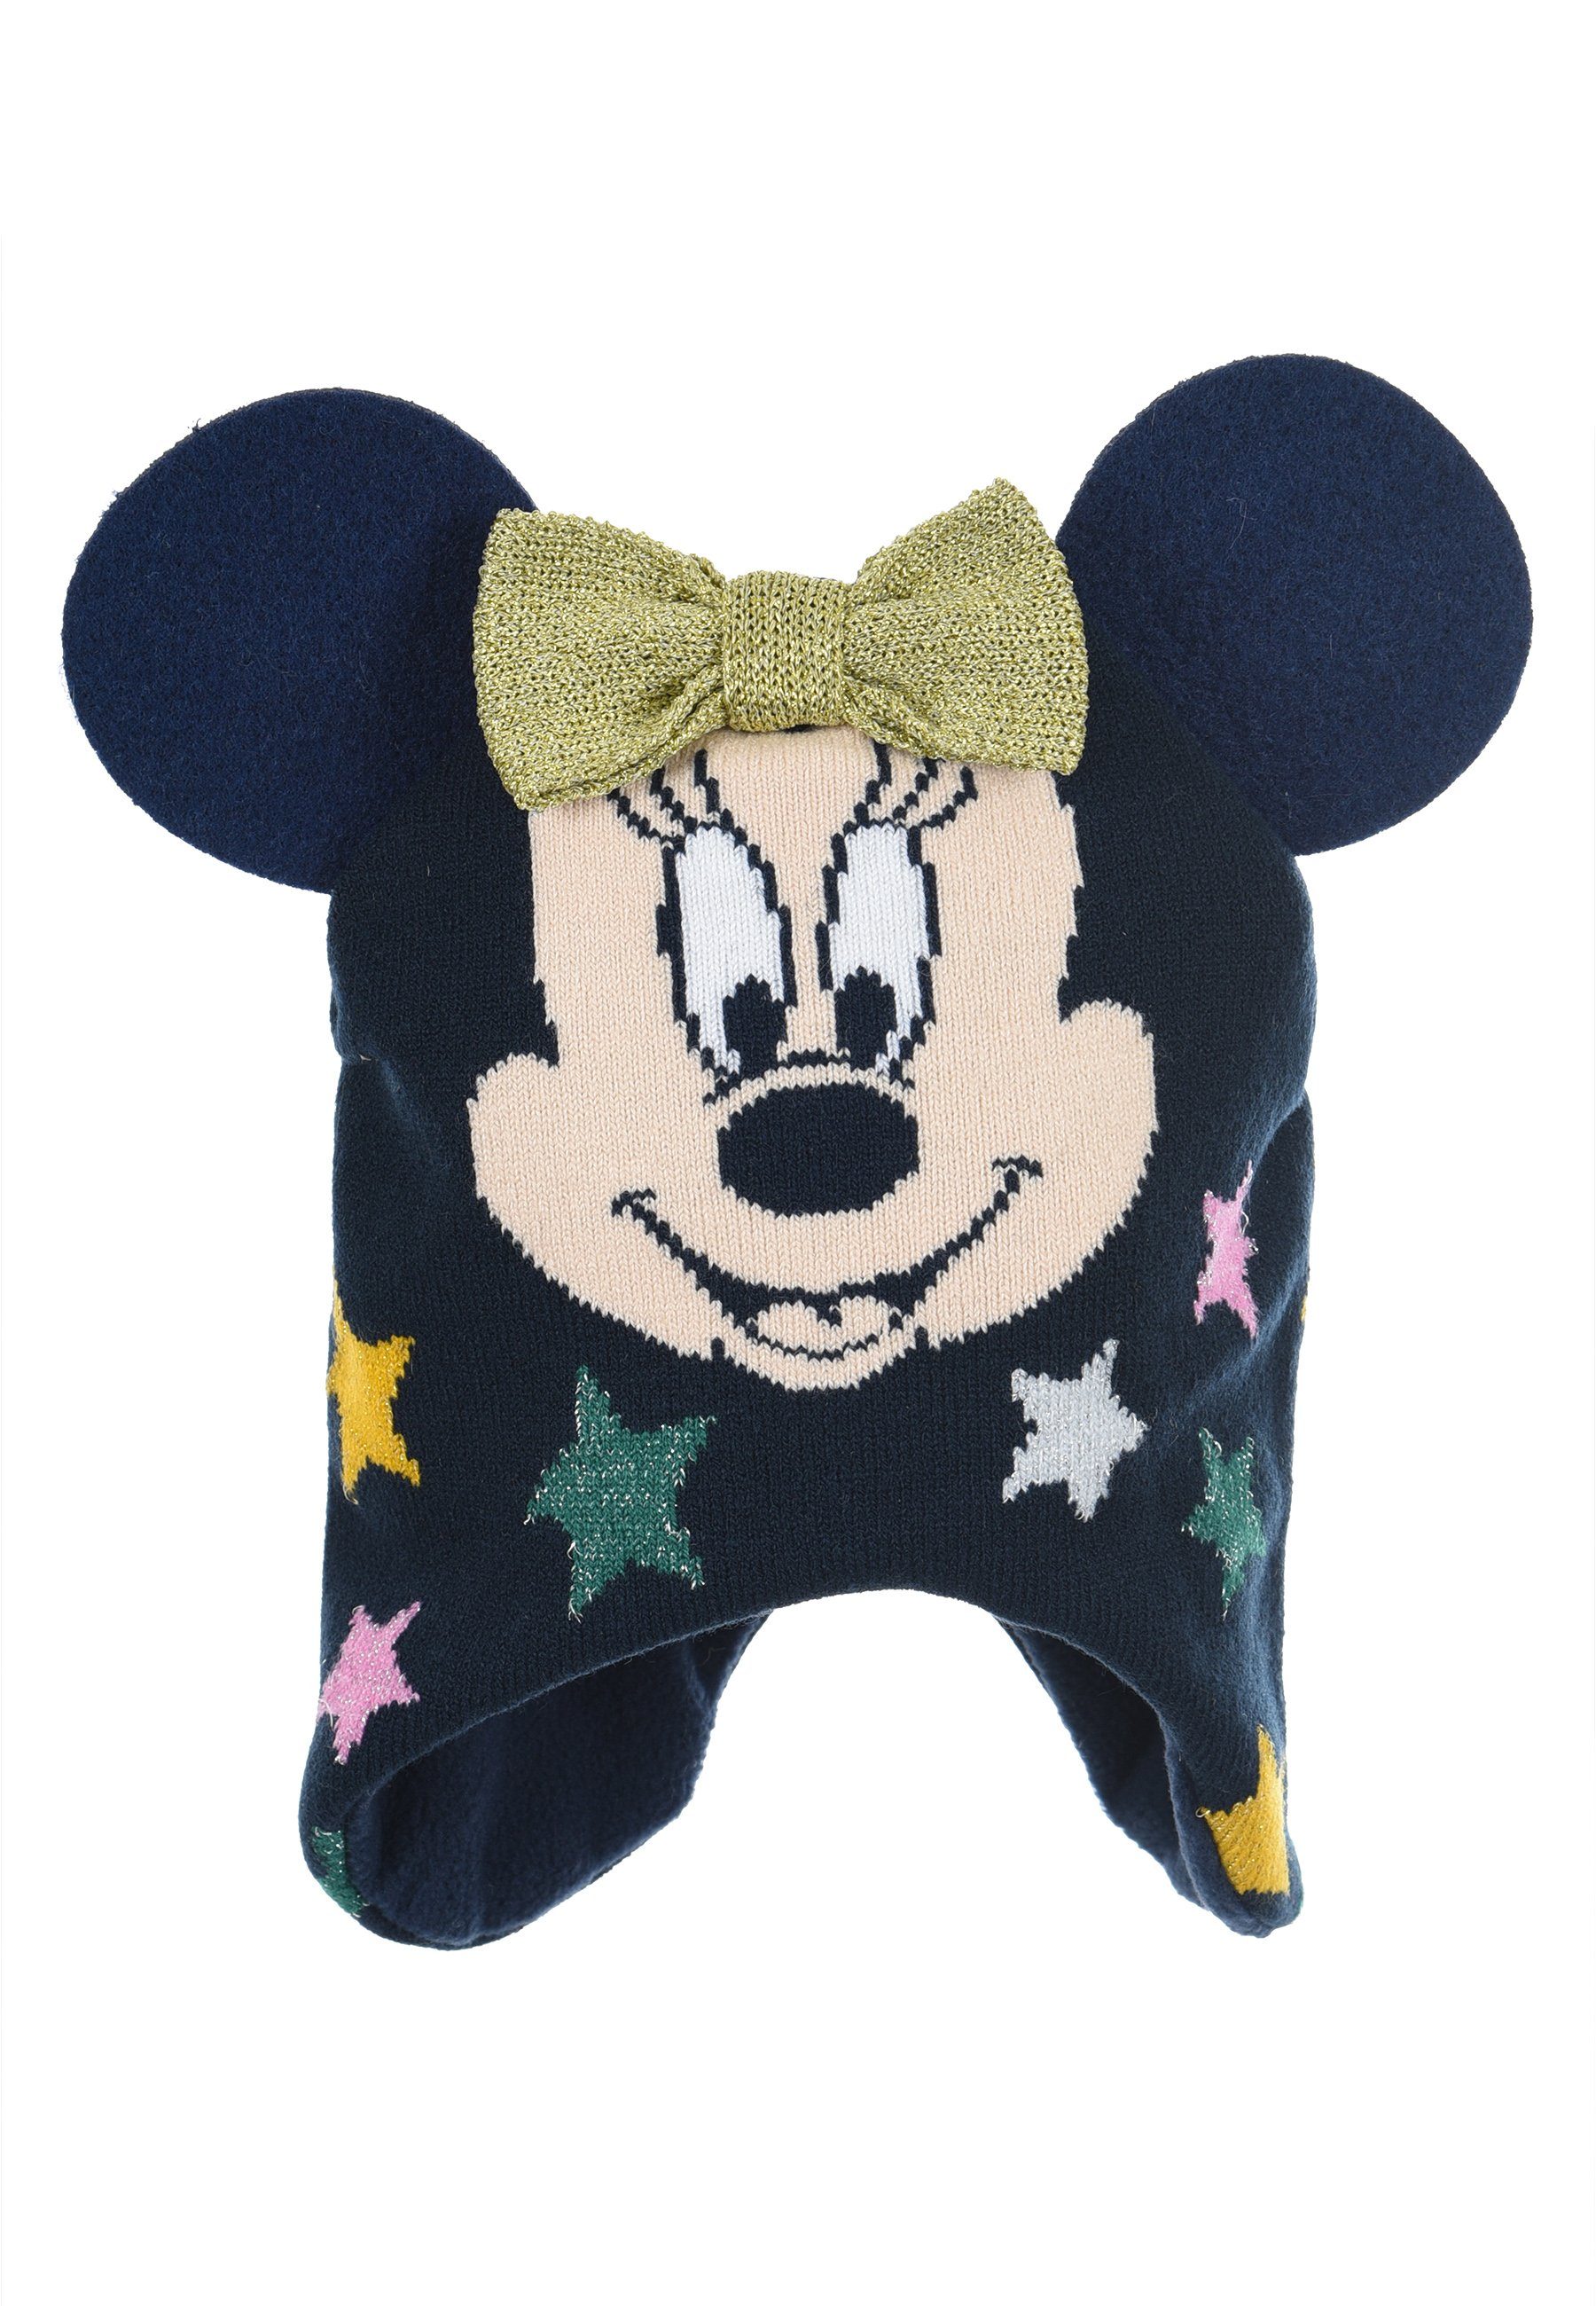 Disney Minnie Mouse Strickmütze Kinder Mädchen Winter-Mütze Strick-Mütze Dunkel-Blau